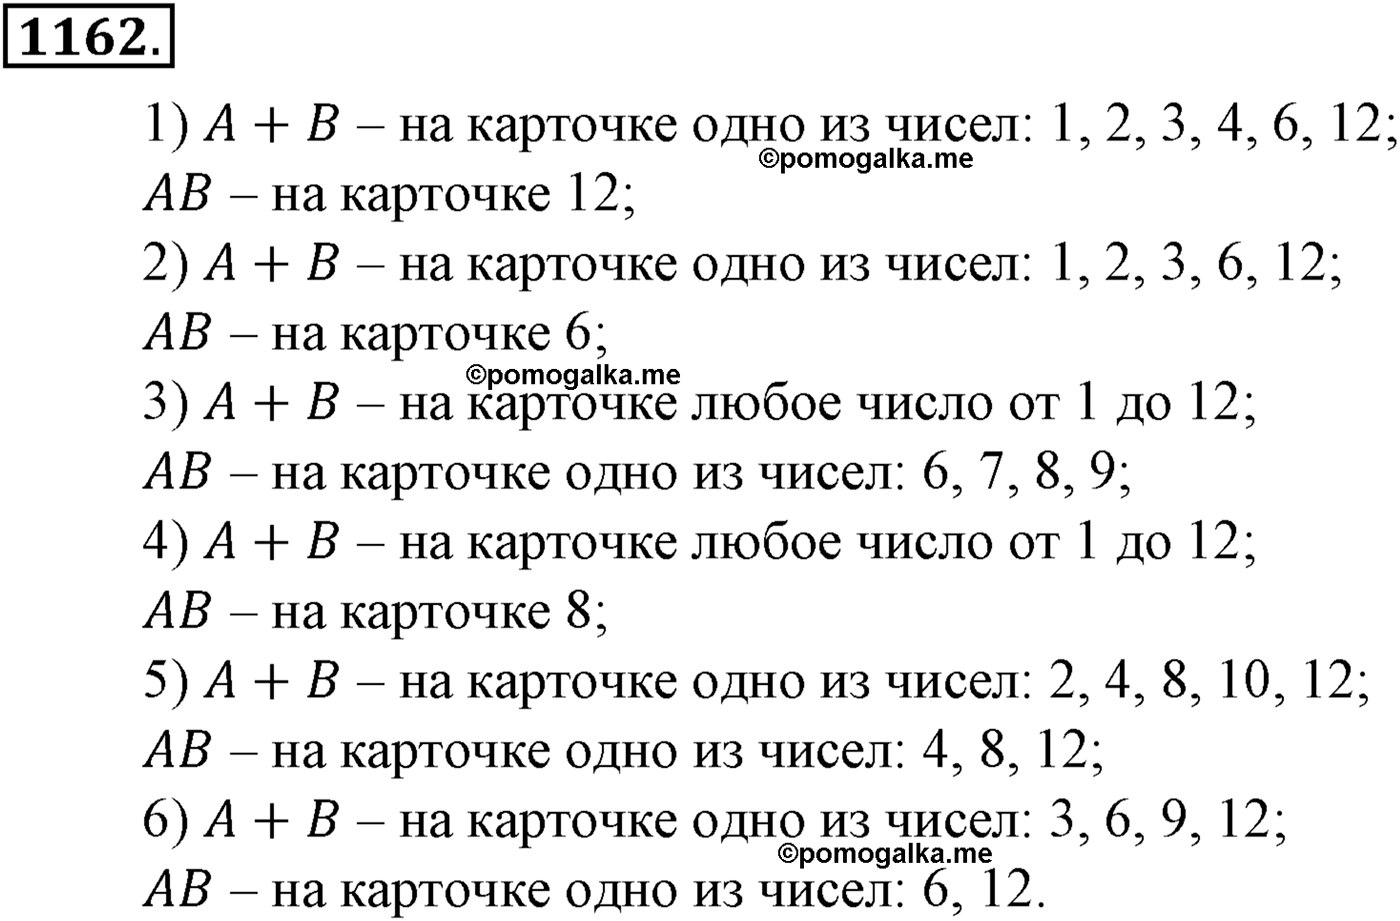 разбор задачи №1162 по алгебре за 10-11 класс из учебника Алимова, Колягина